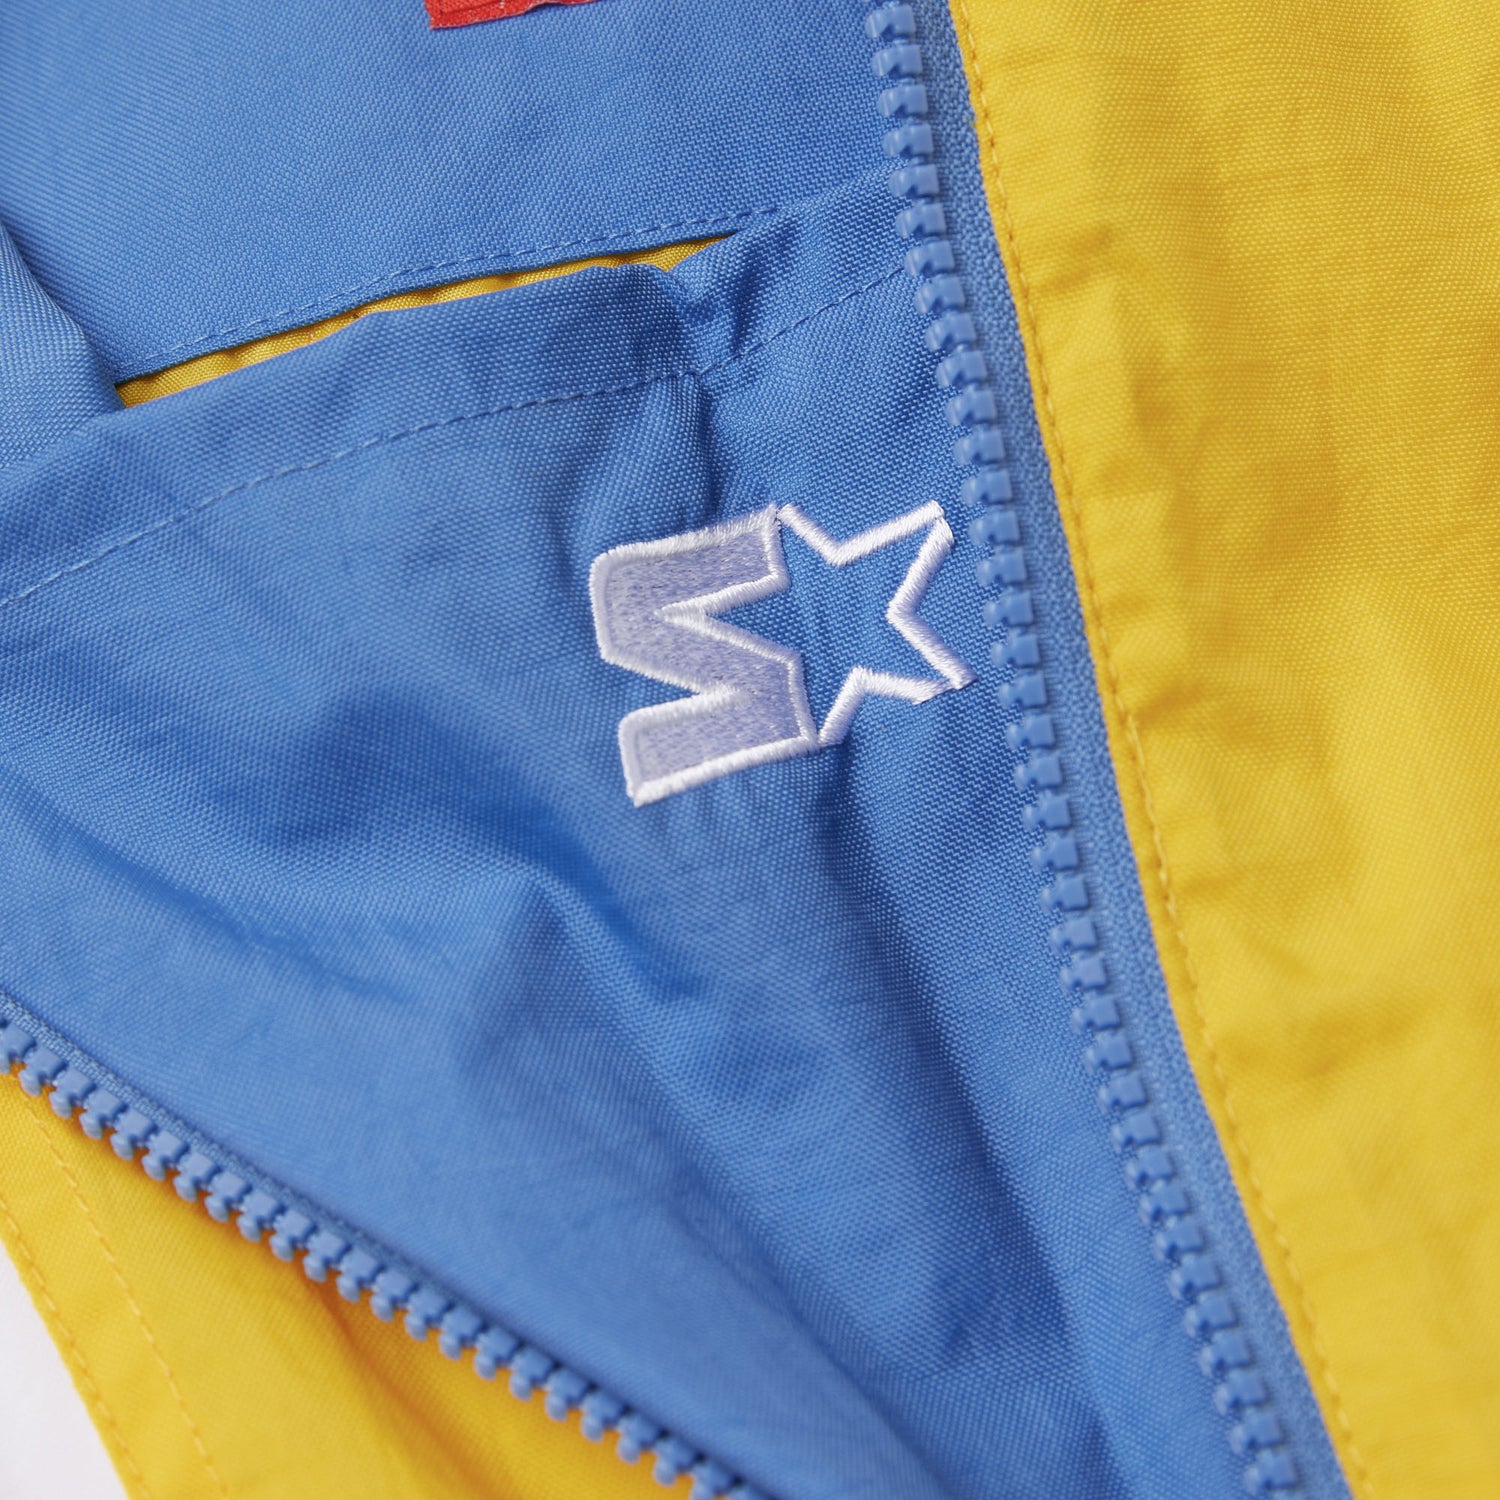 HOMAGE X Starter Saints Pullover Jacket